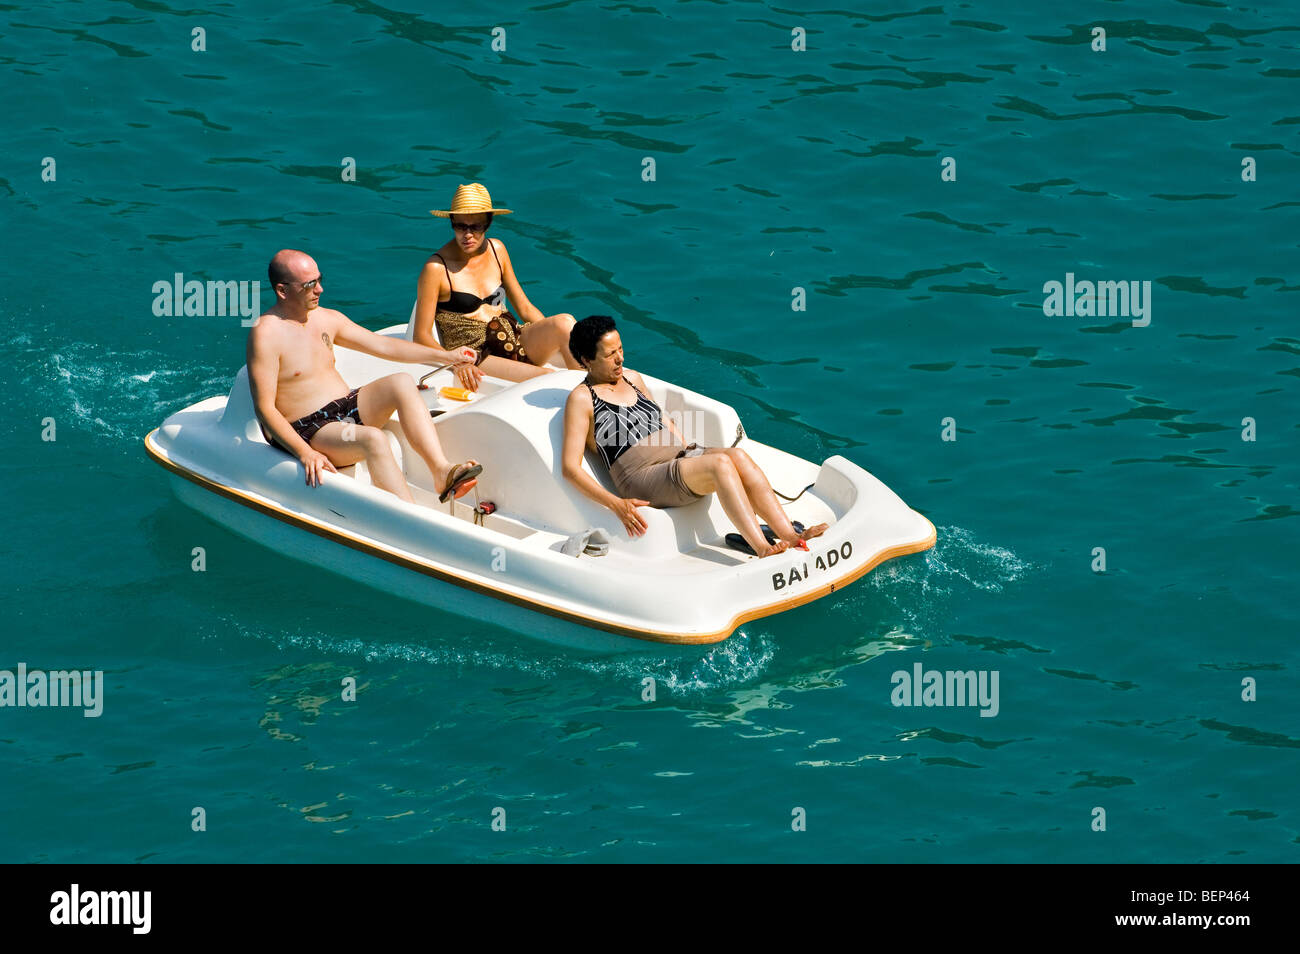 Ältere Touristen in Badekleidung im Tretboot auf dem See in den Sommerferien an einem heißen Tag Stockfoto